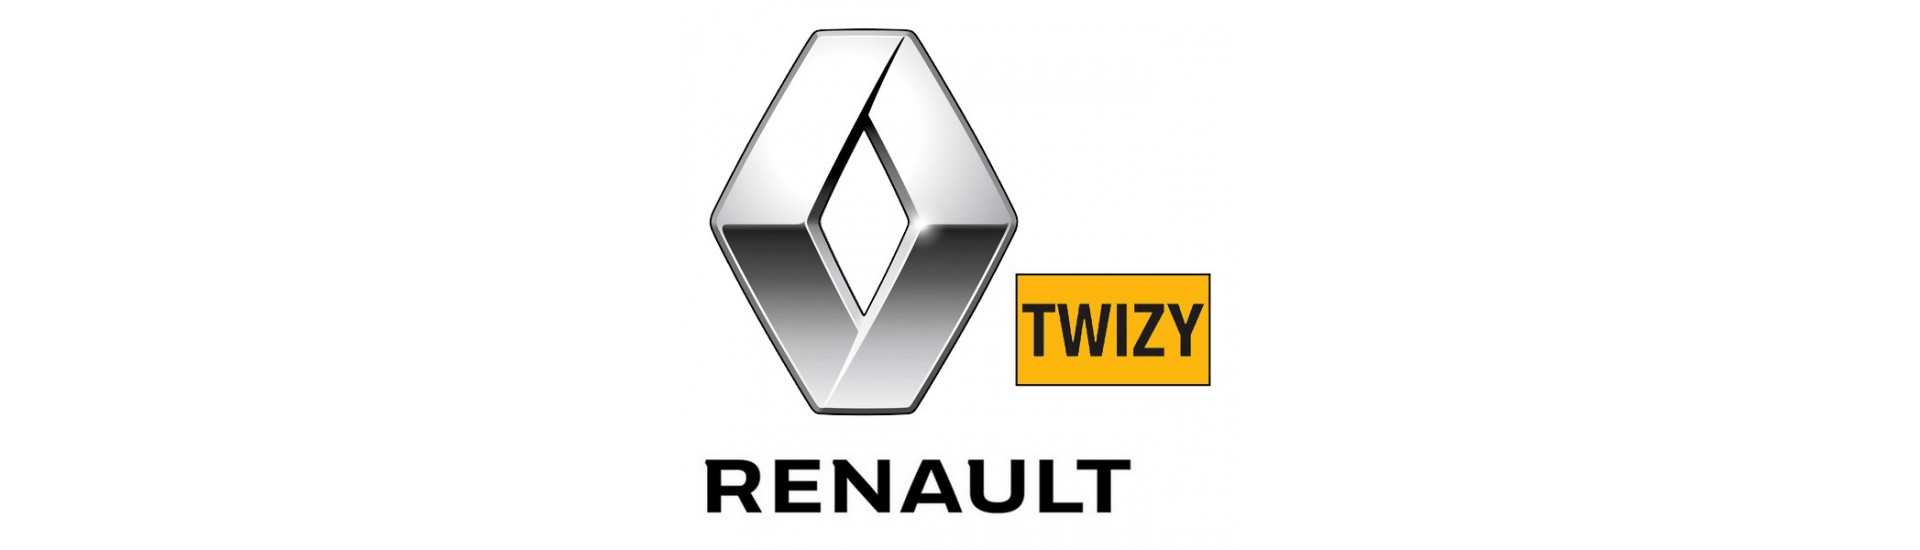 Suspension roll till bästa pris för bil utan tillstånd Renault